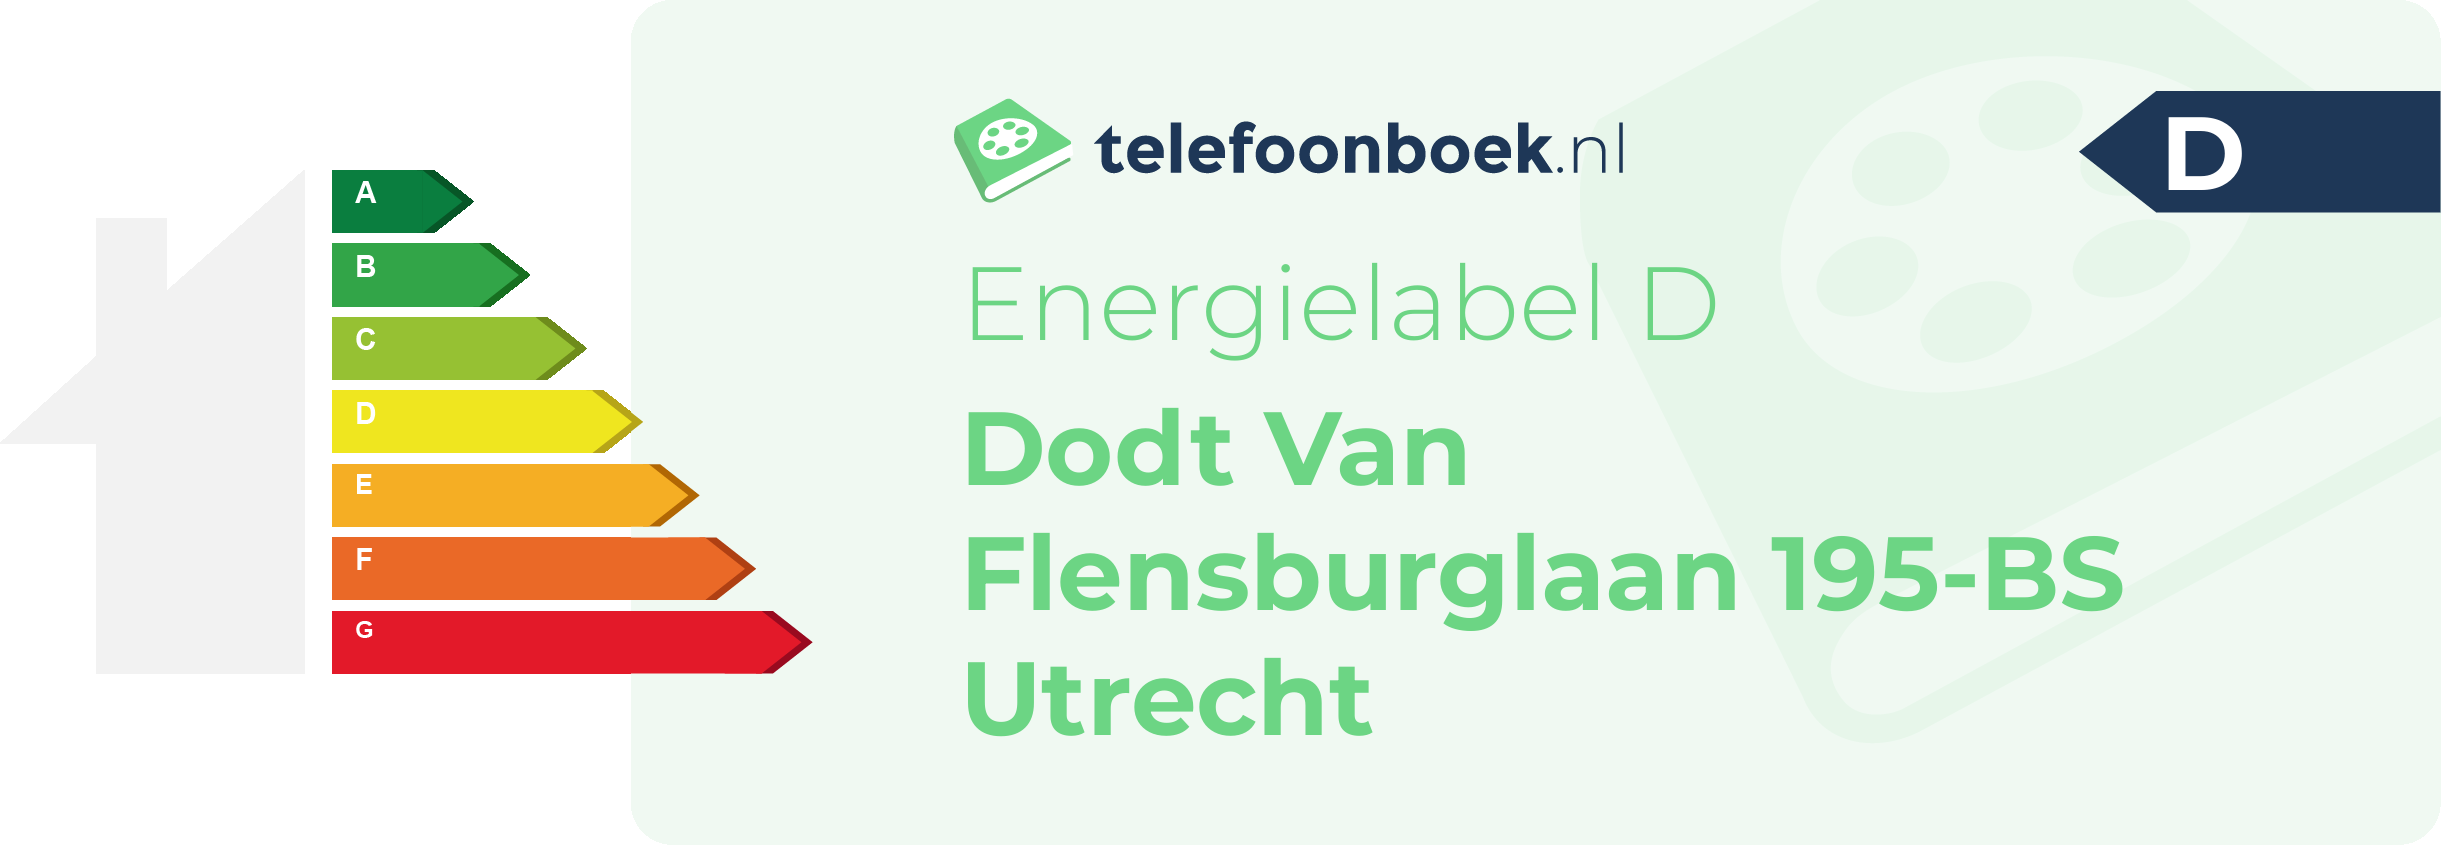 Energielabel Dodt Van Flensburglaan 195-BS Utrecht